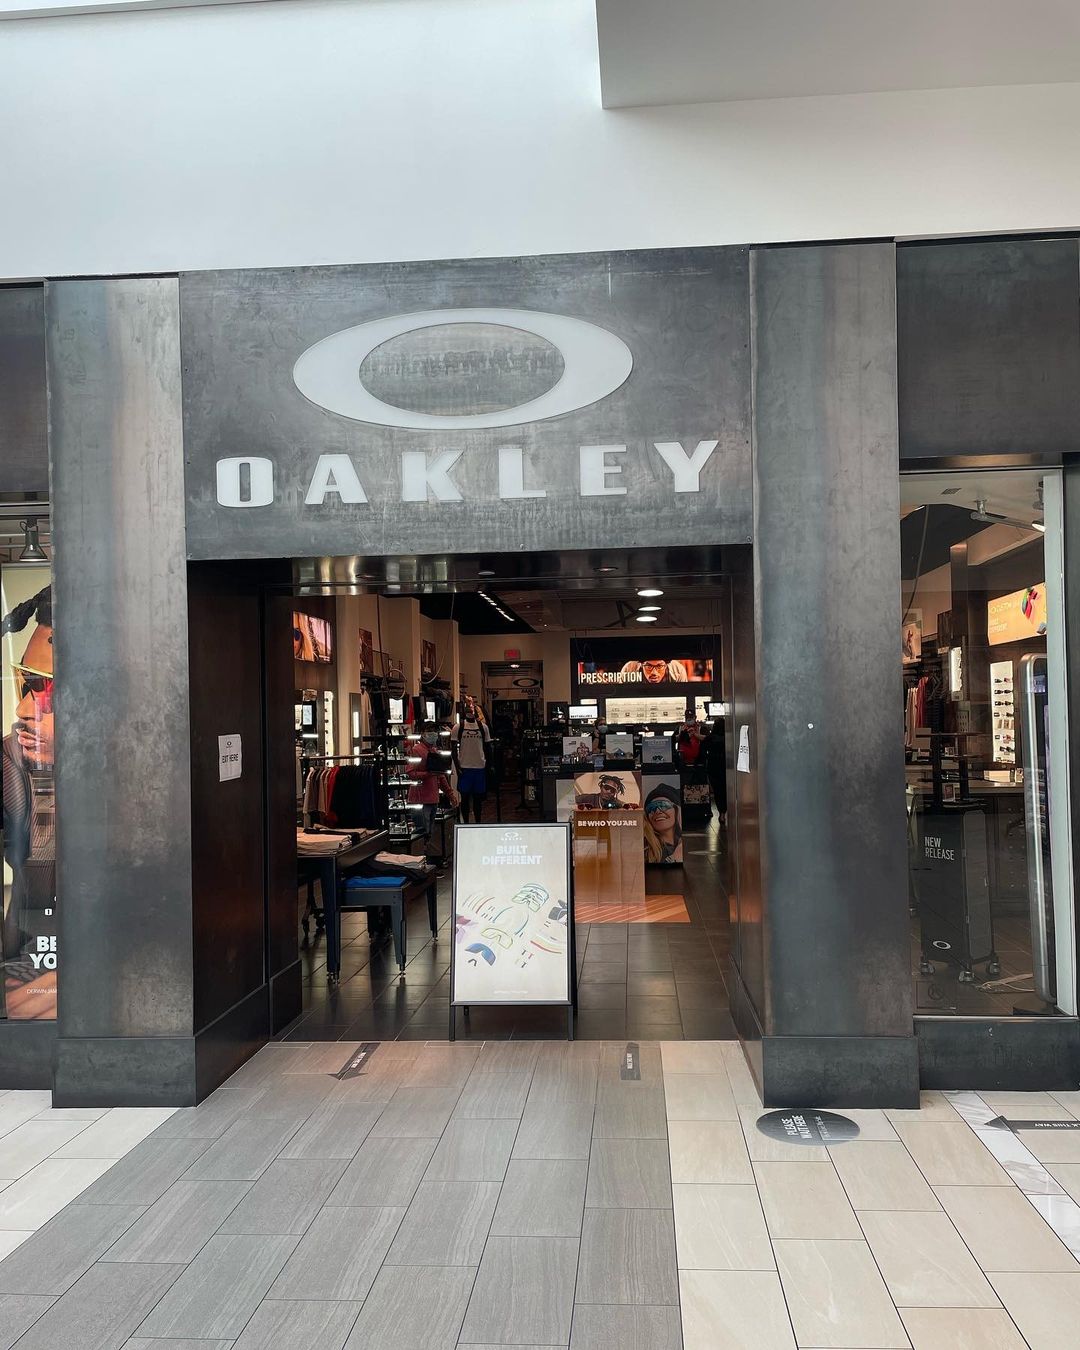 Oakley Florida Mall - Shopping in Orlando